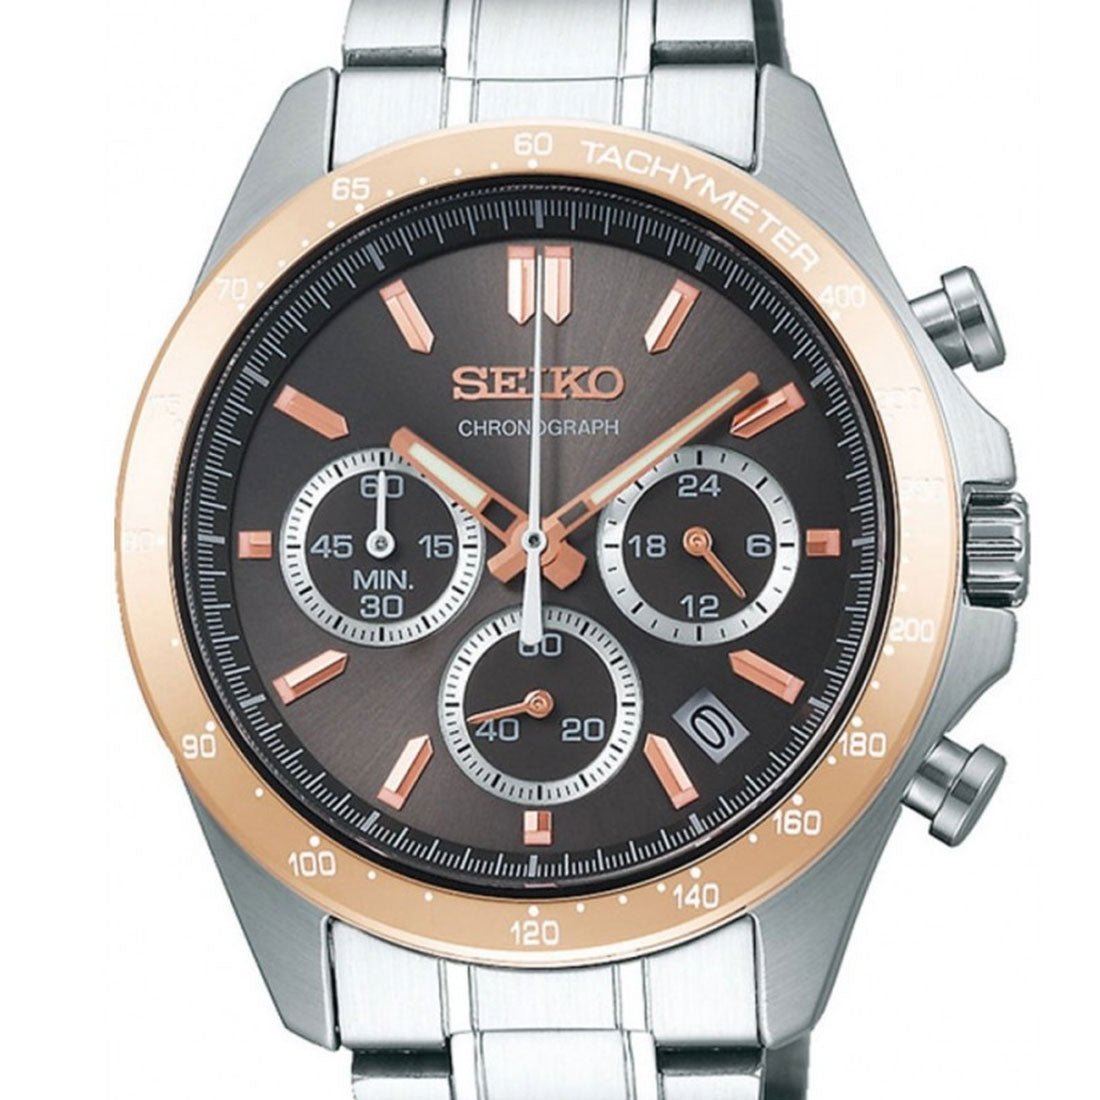 Seiko Spirit SBTR026 JDM Selection Brown Dial Chronograph Quartz Stainless Steel Watch -Seiko